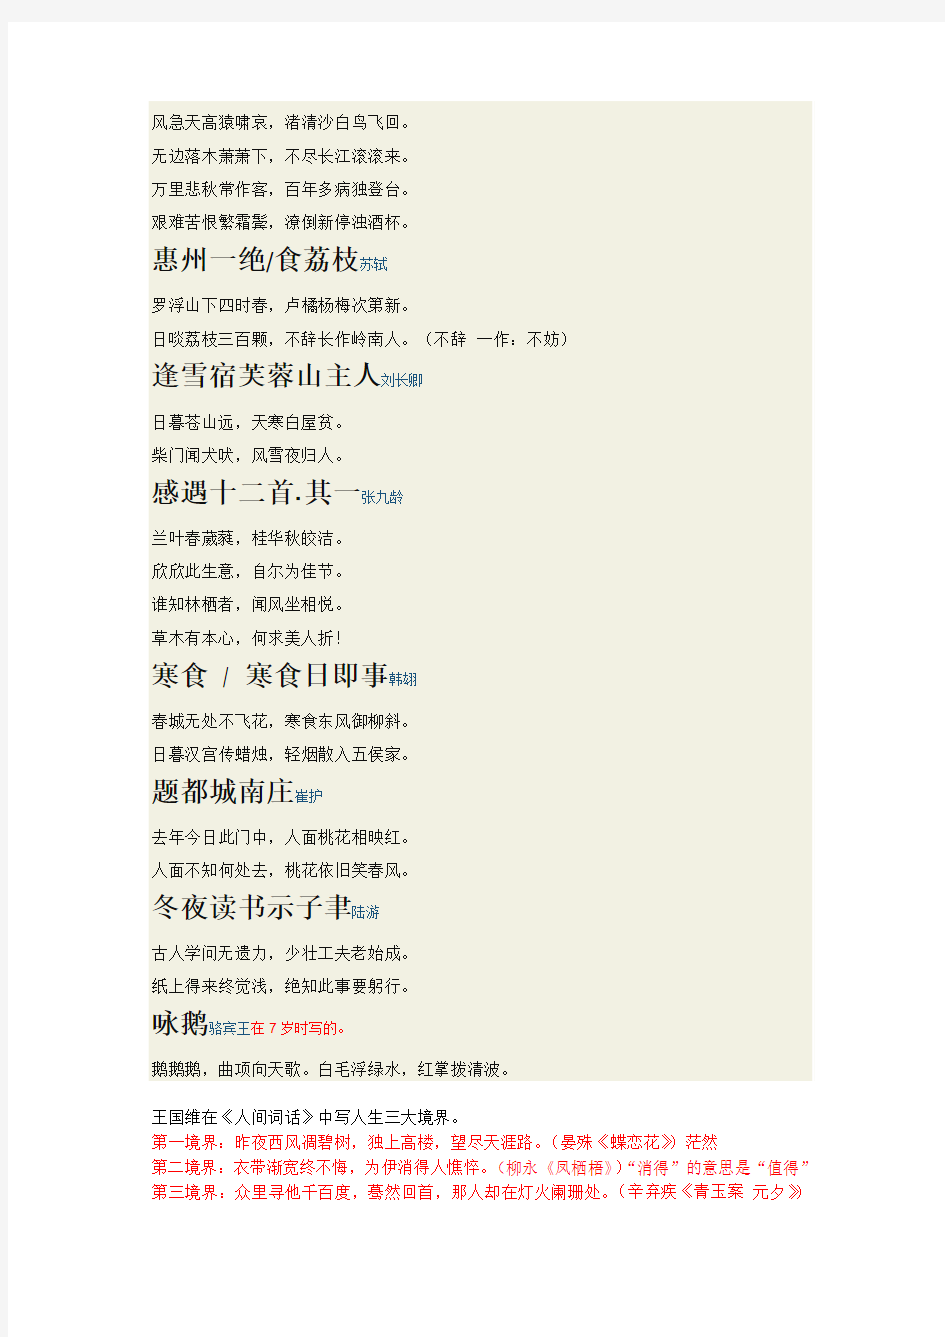 中华好诗词20140111第一季复活涉及诗词